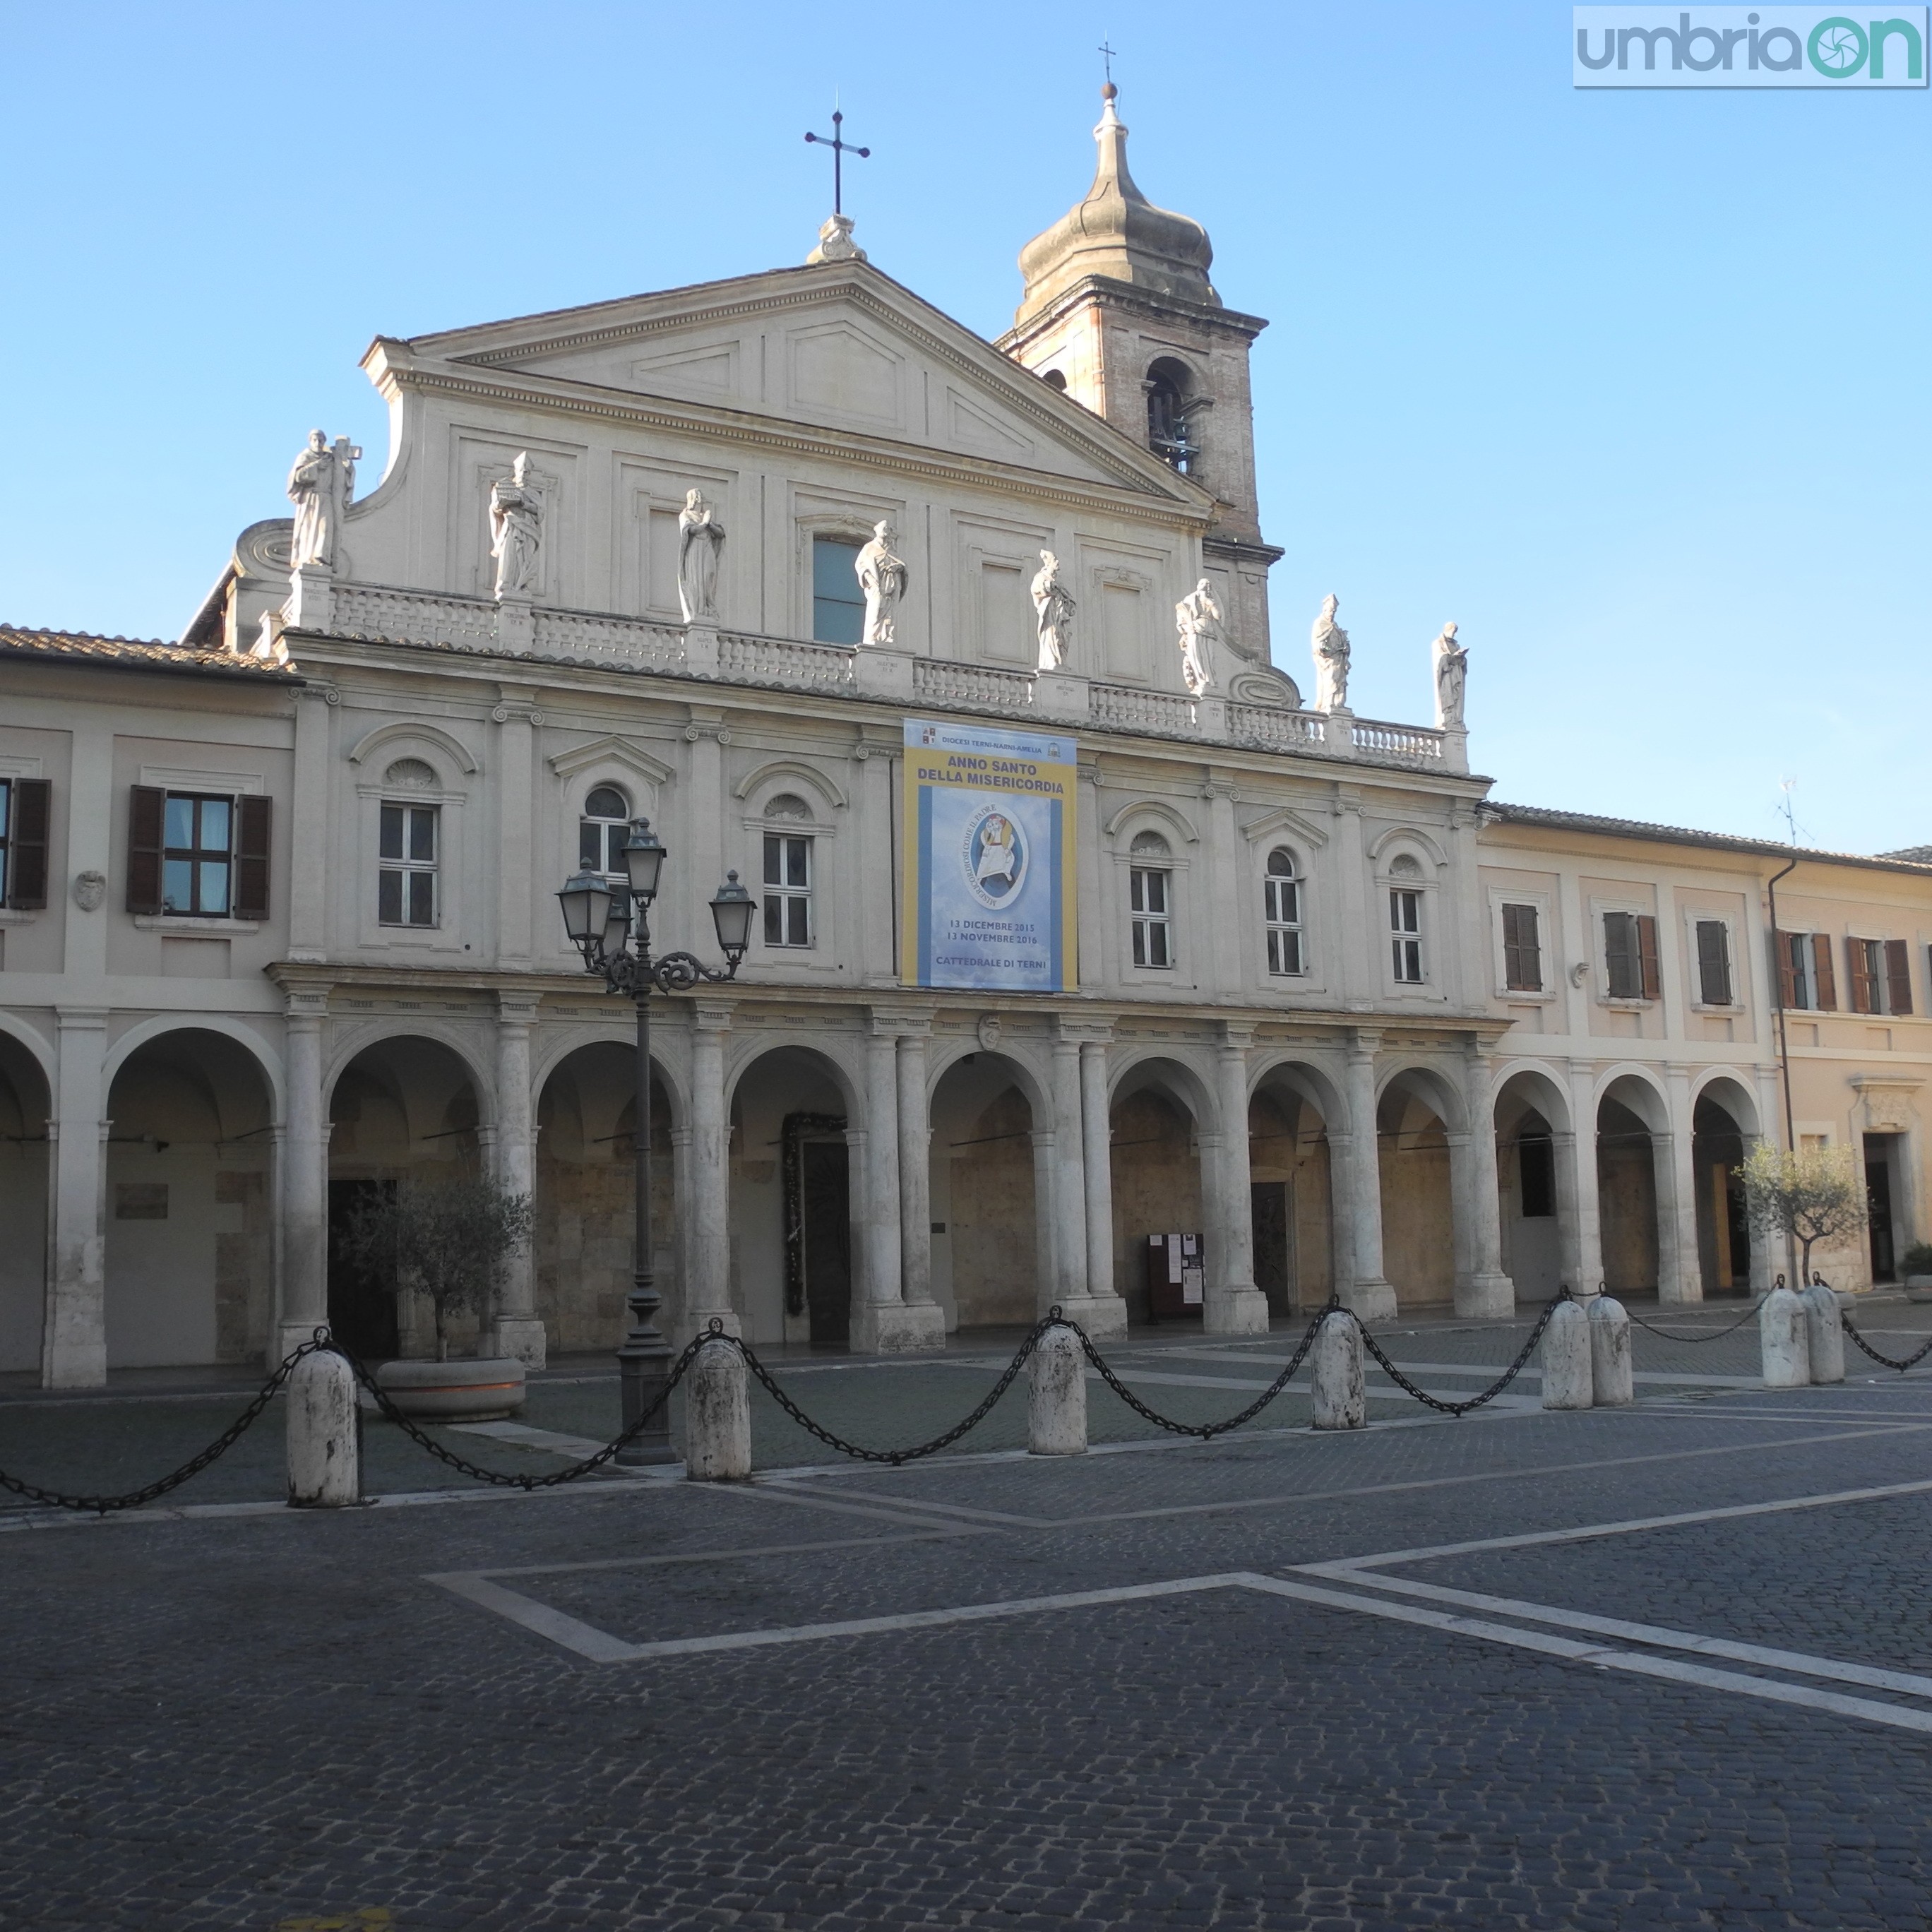 Piazza Duomo Terni (2)